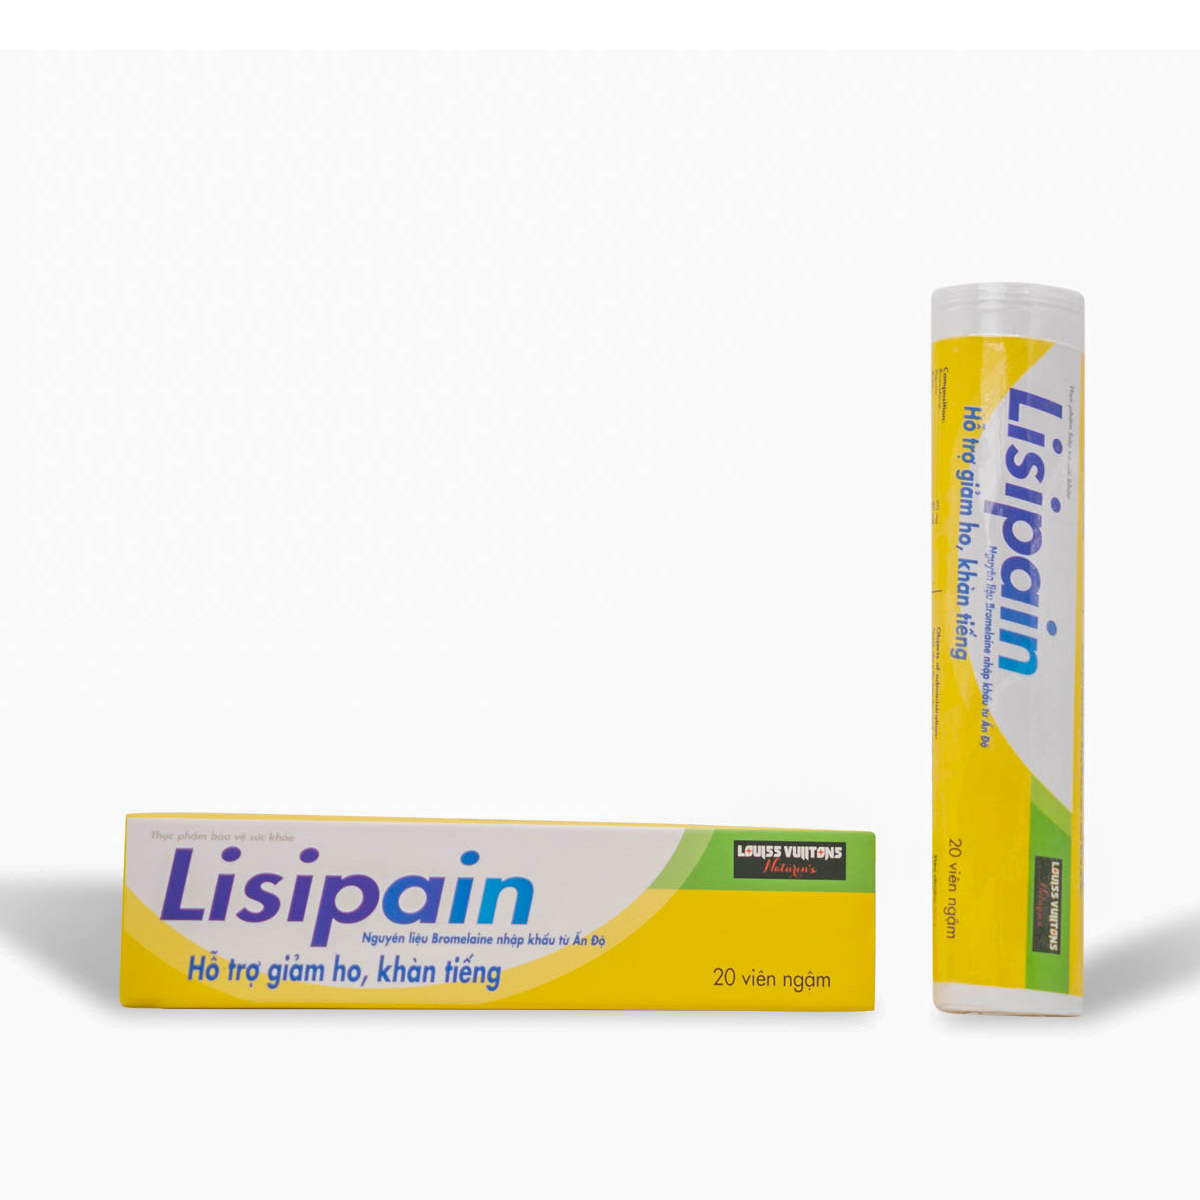 Lisipain - Hỗ trợ giảm ho, khàn tiếng, giúp làm dịu đau rát họng.